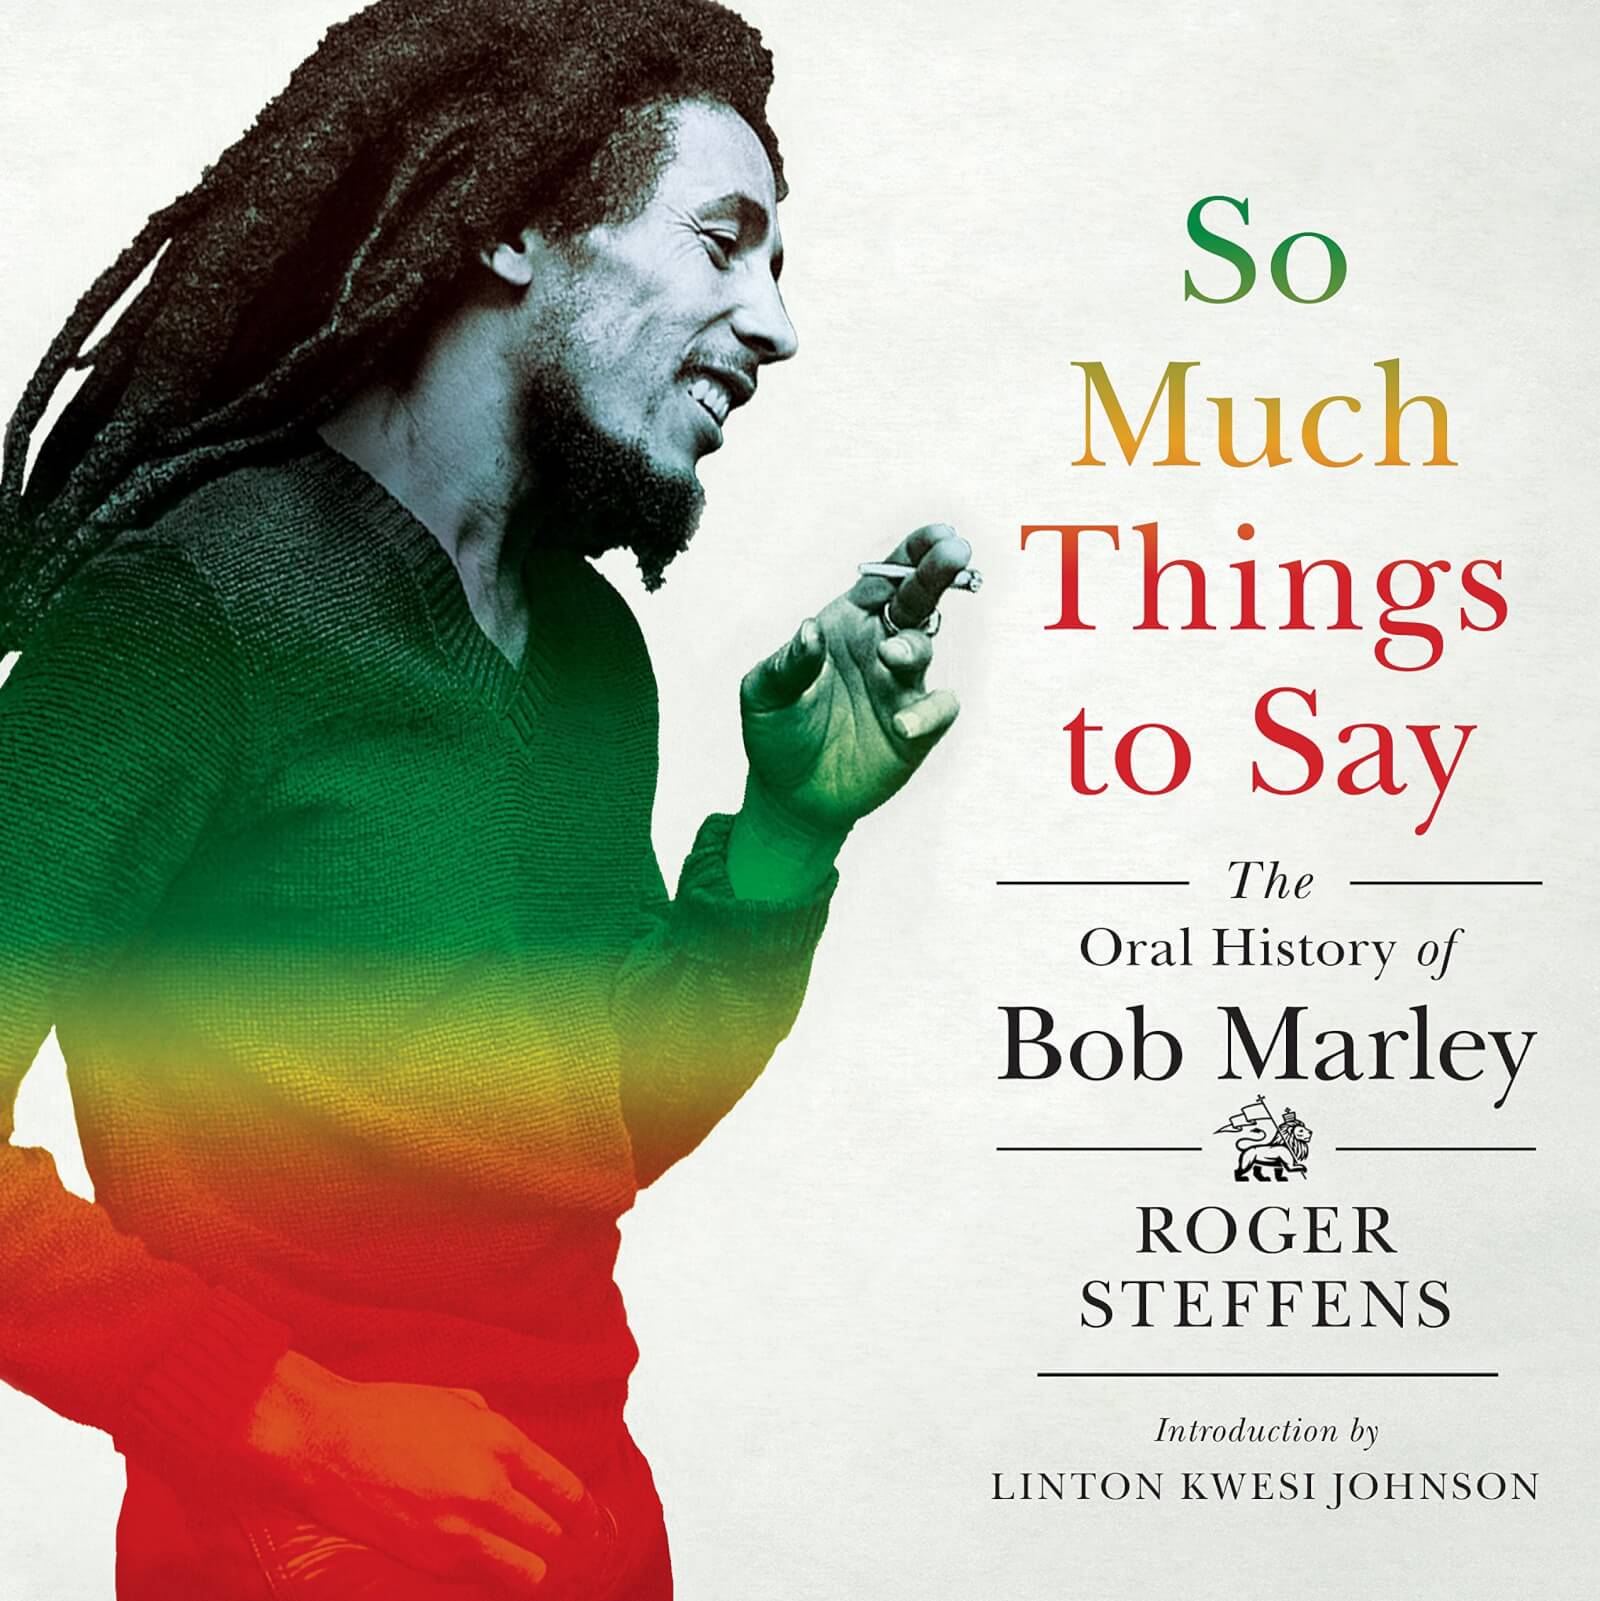 The Oral History of Bob Marley